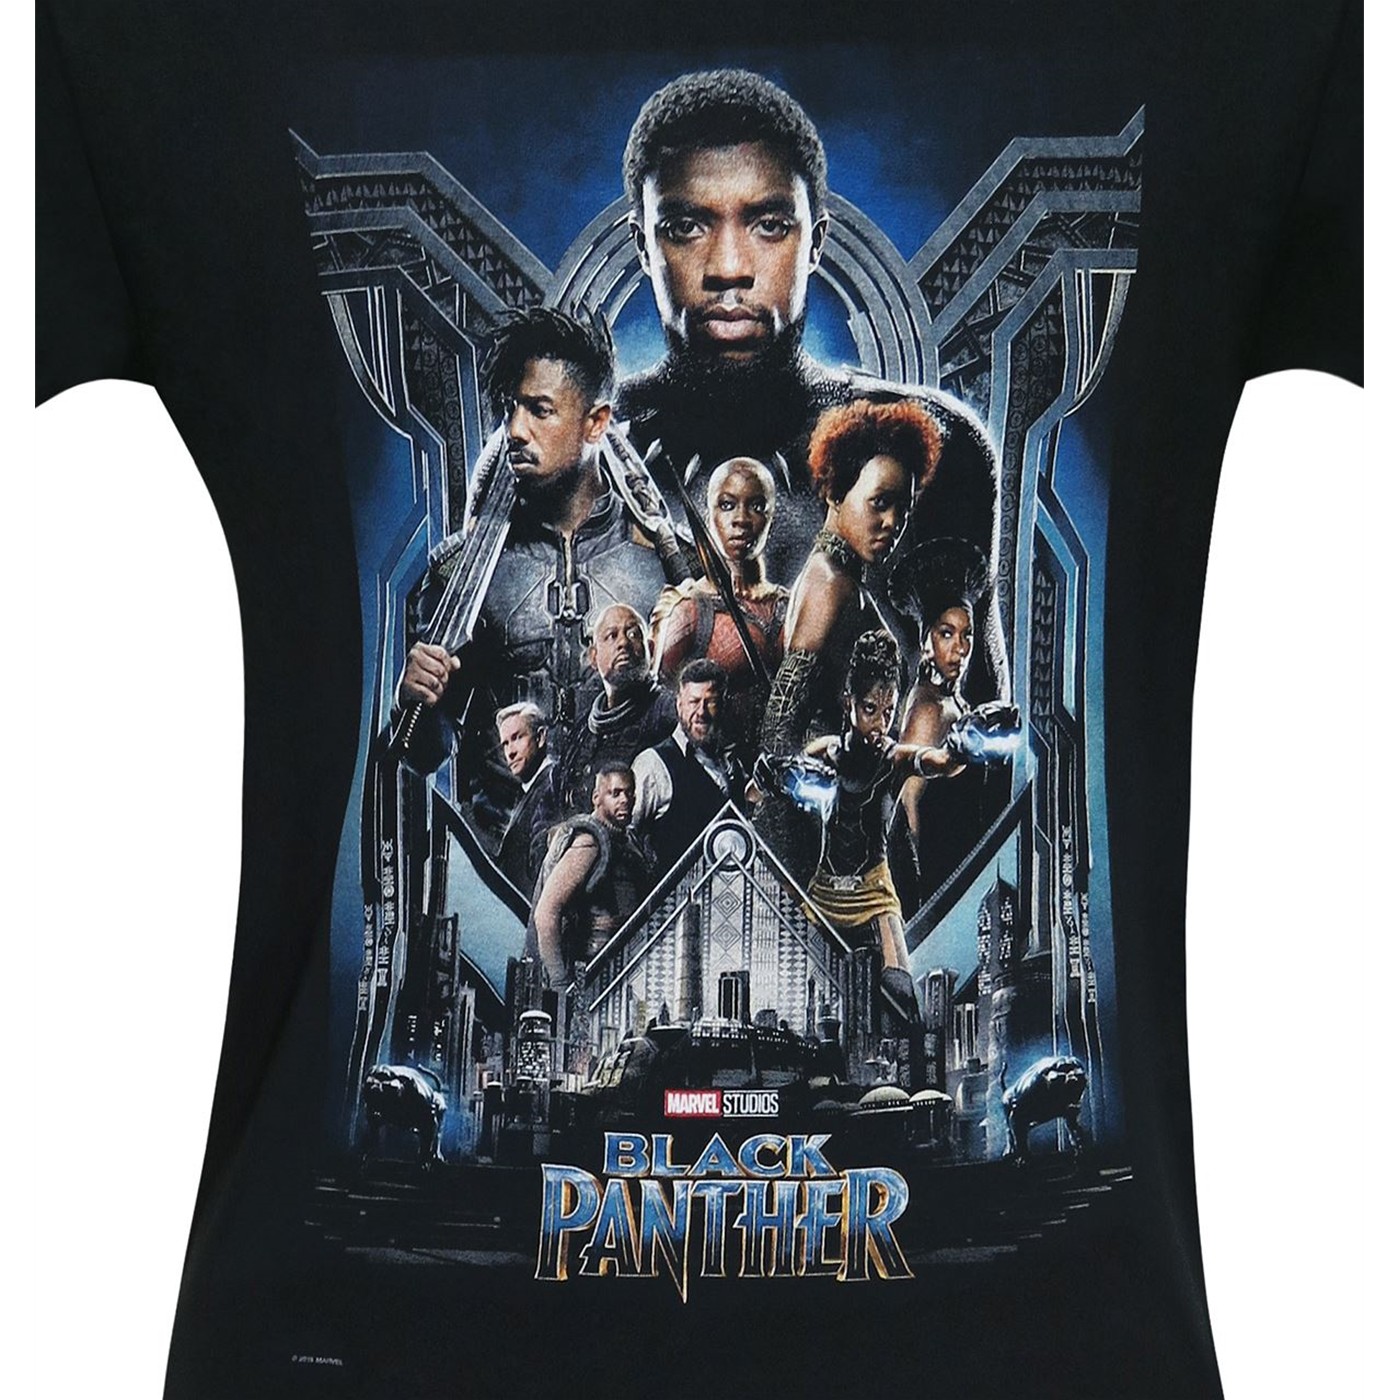  Black  Panther  Movie Poster  Men s T Shirt